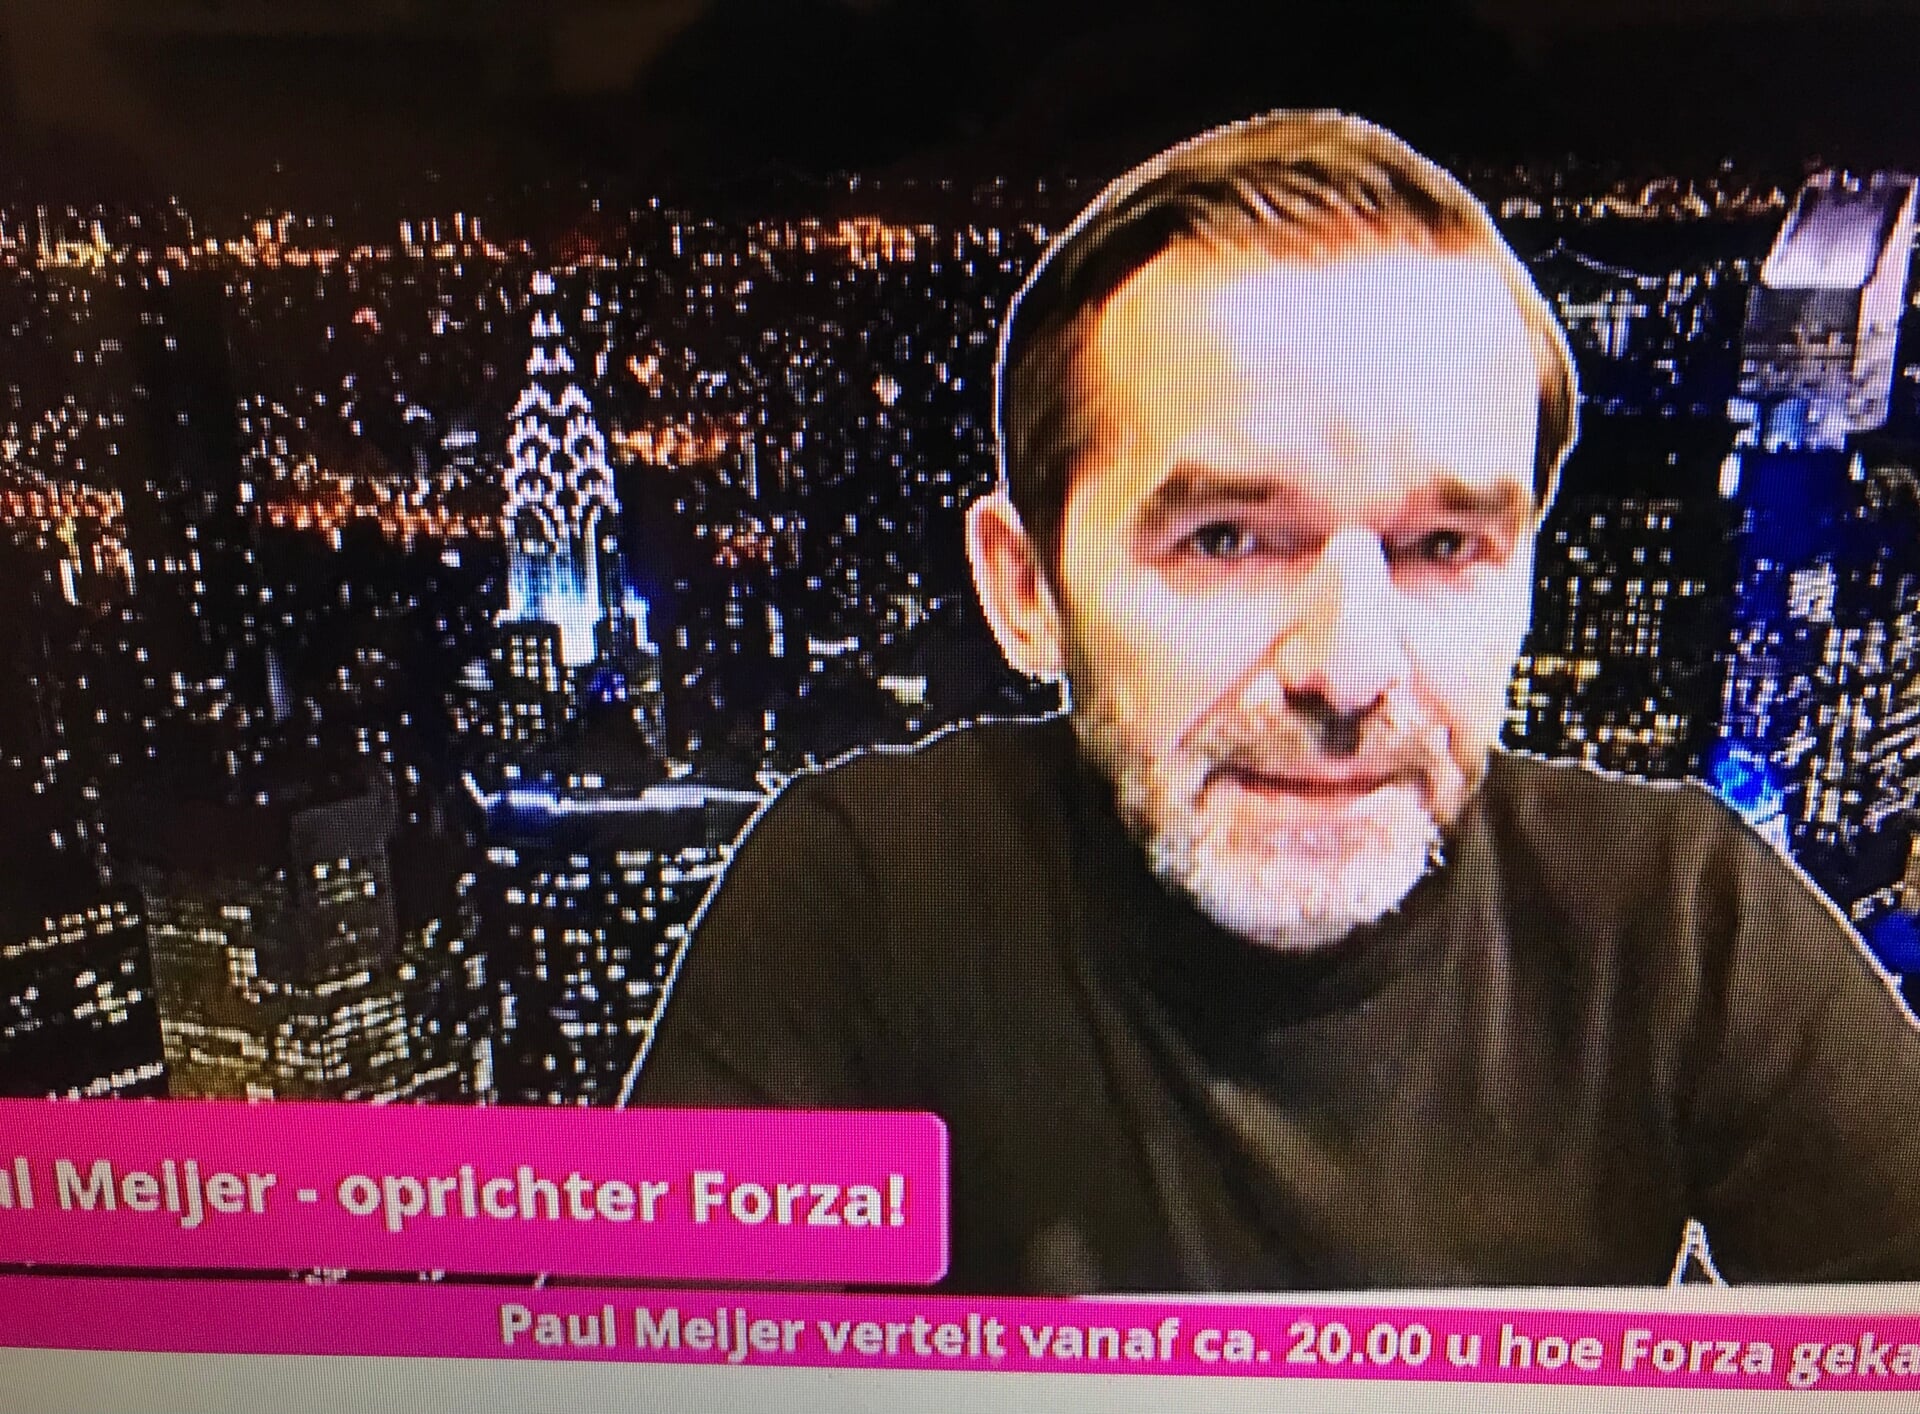 Paul Meijer vertrouwt op de de keuze van de kiezers op 16 maart.  